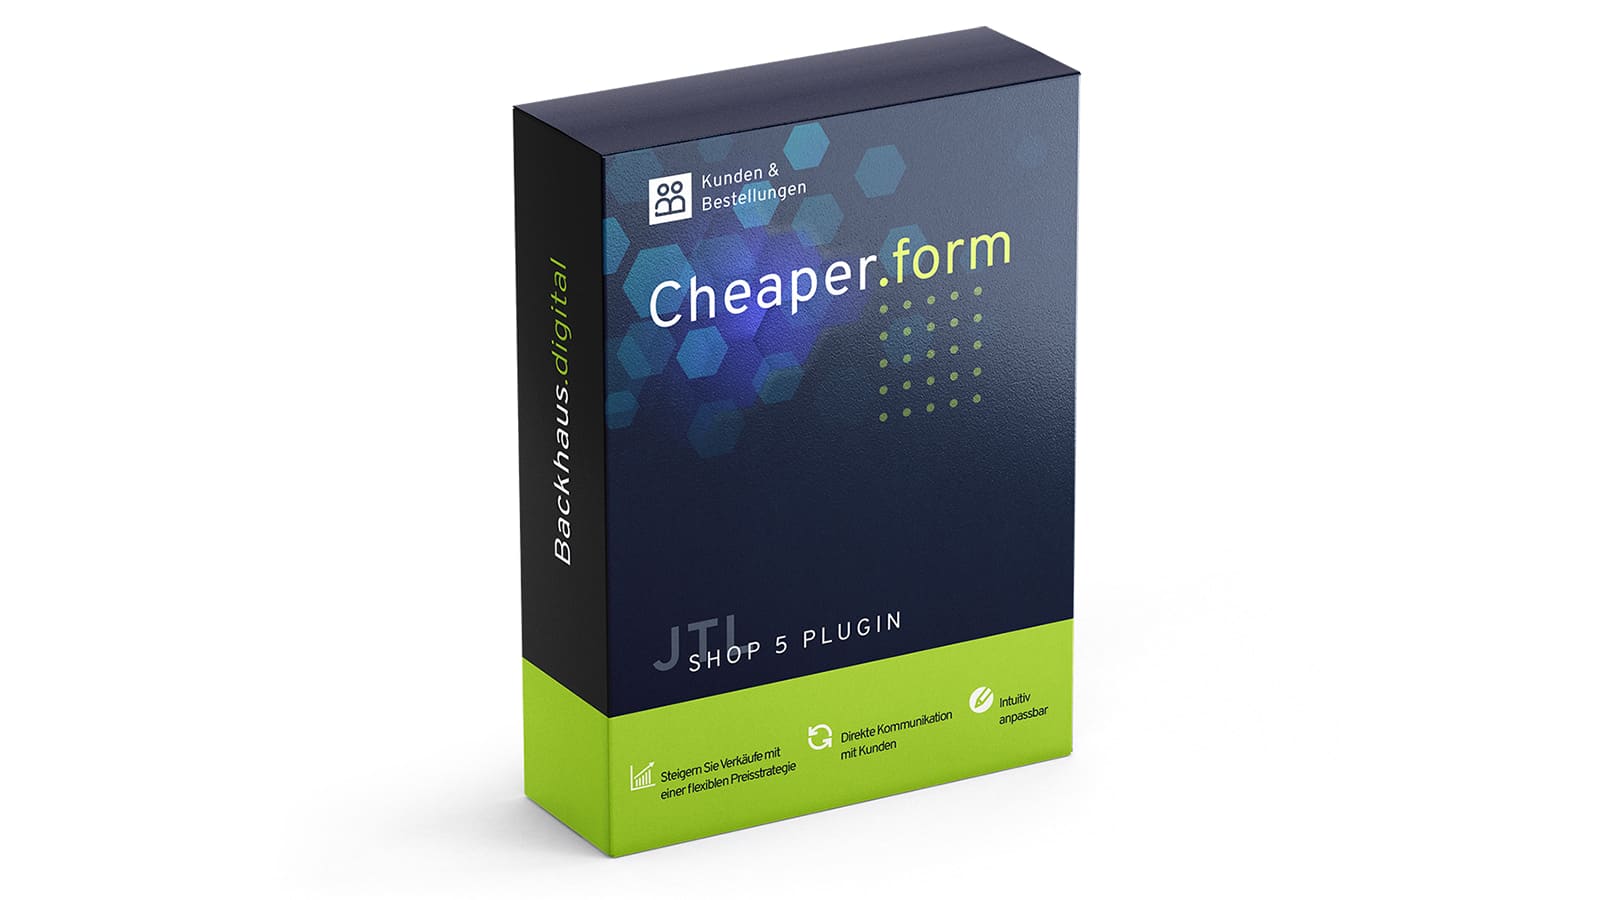 jtl-plugin-cheaper-form-cover-min